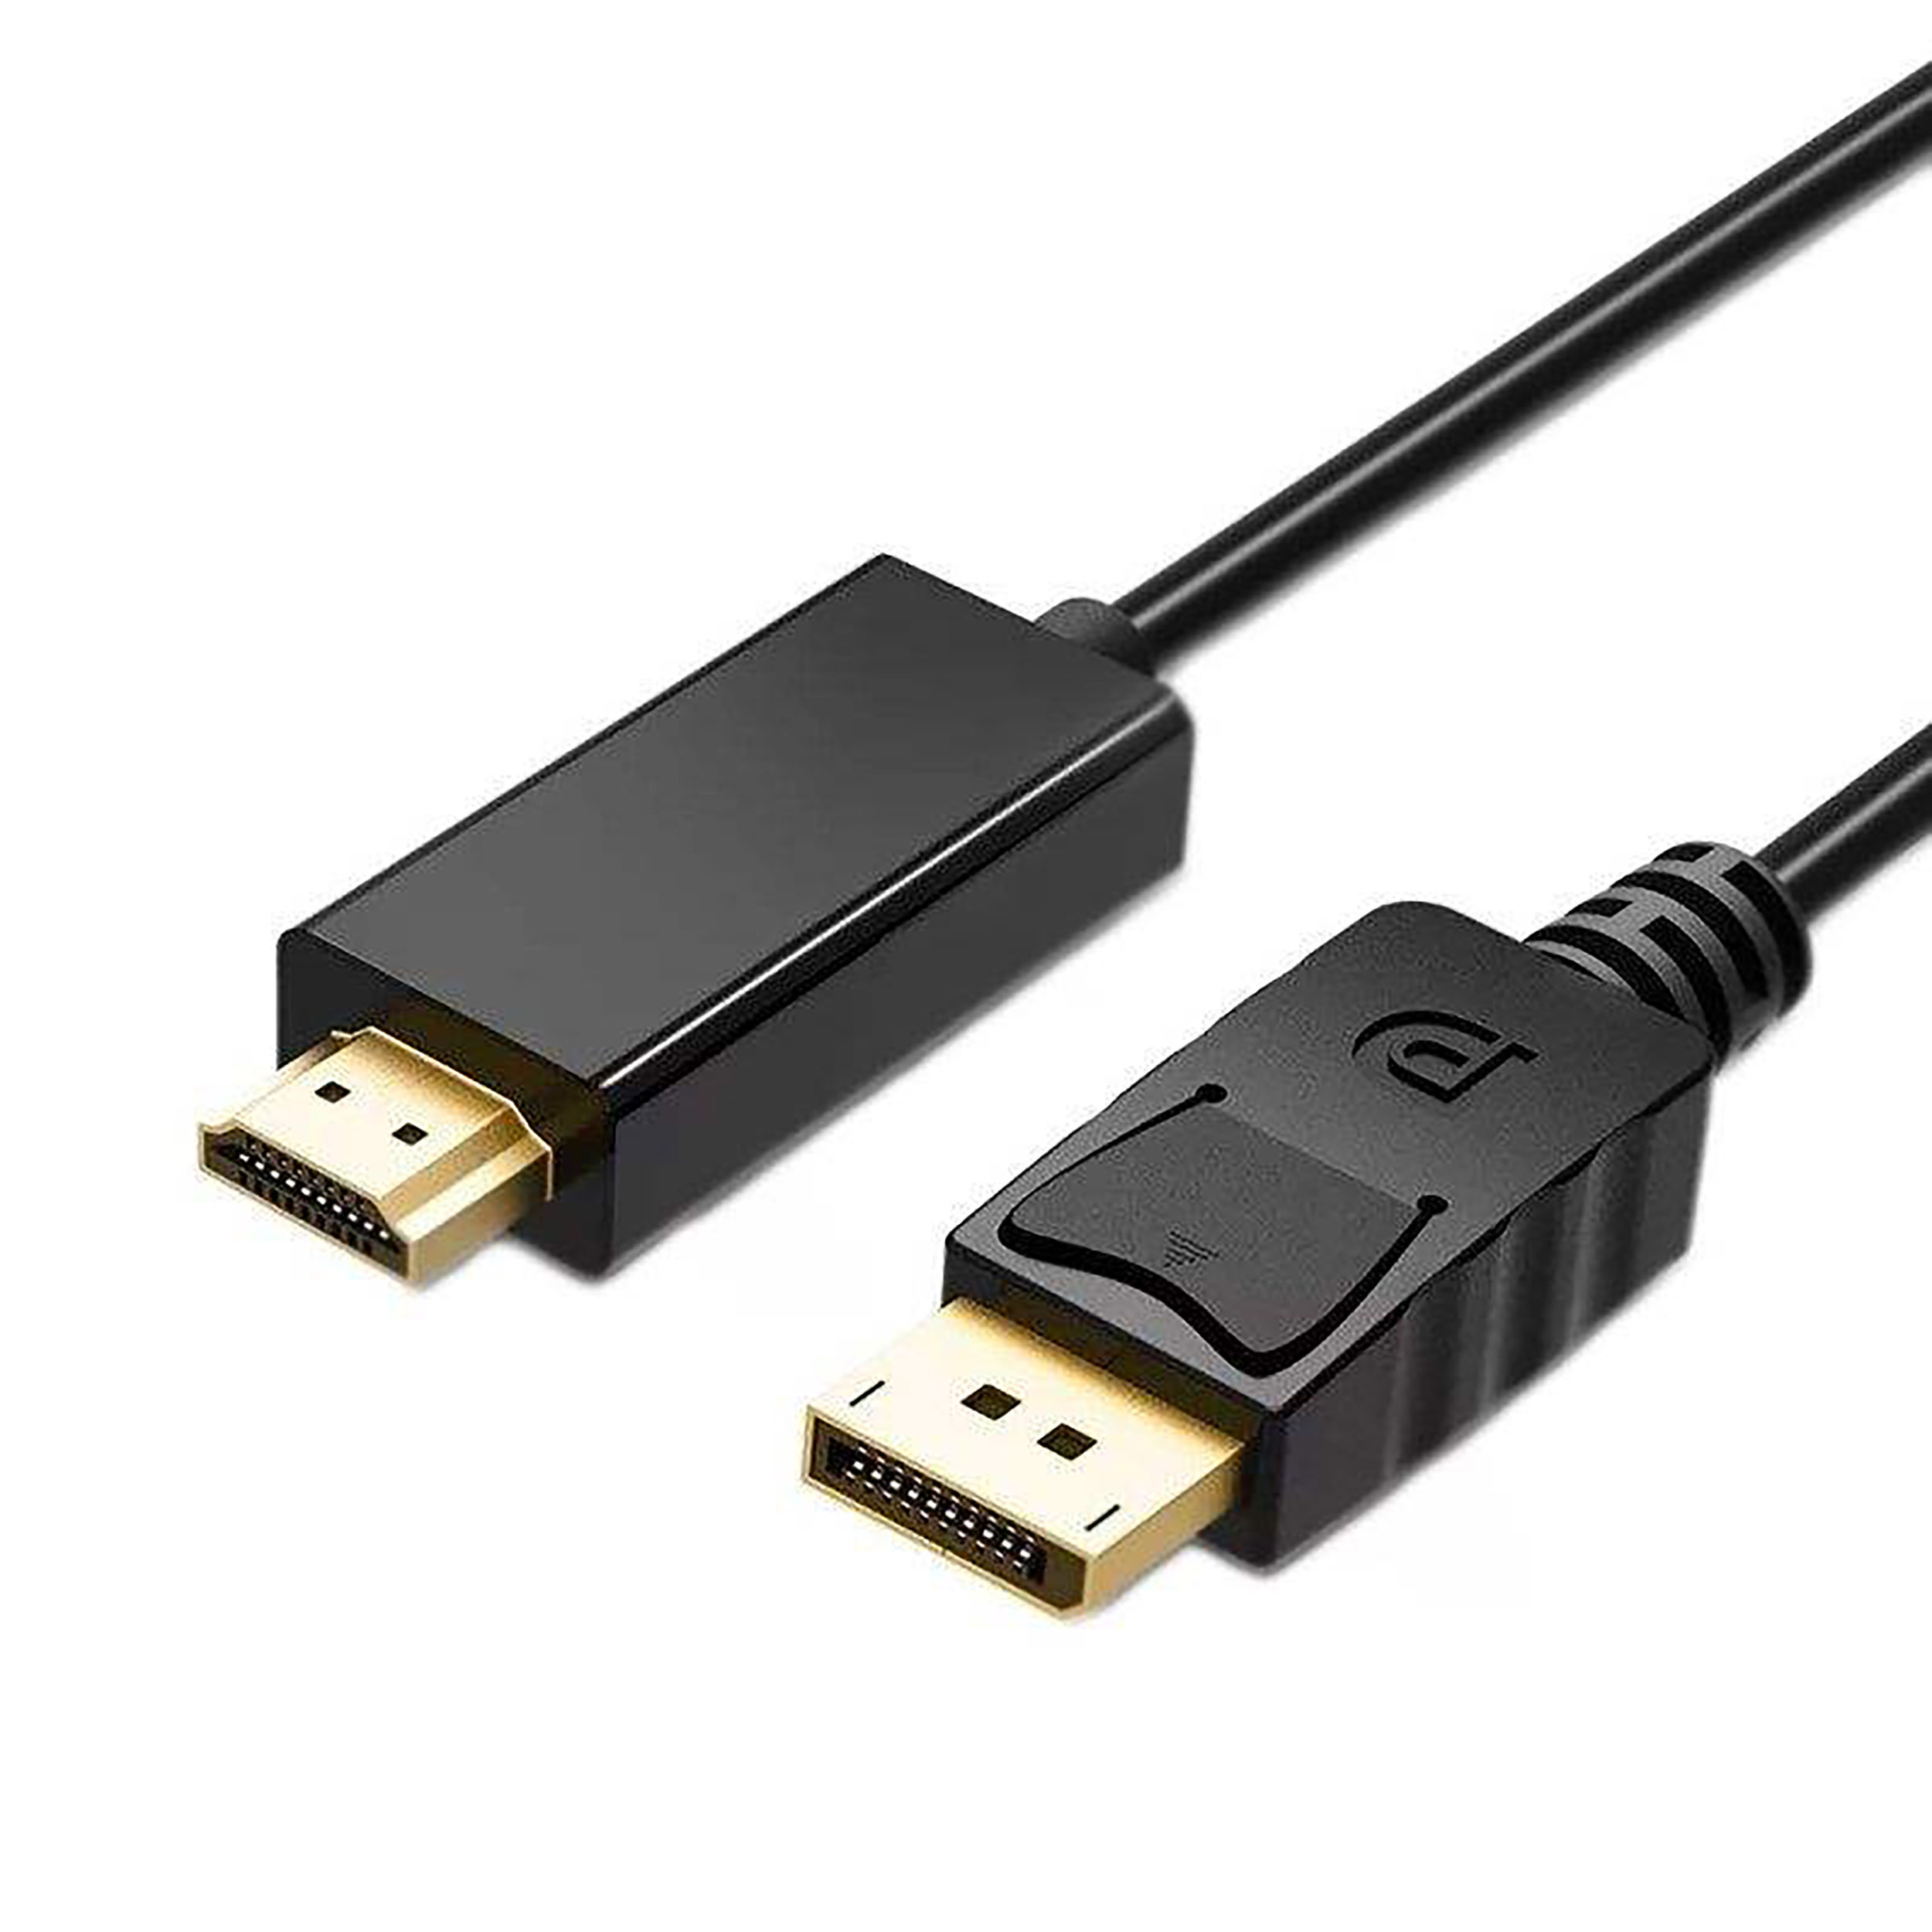 کابل DisPlay Port به HDMI وی نت مدل DP55 طول 1.5 متر